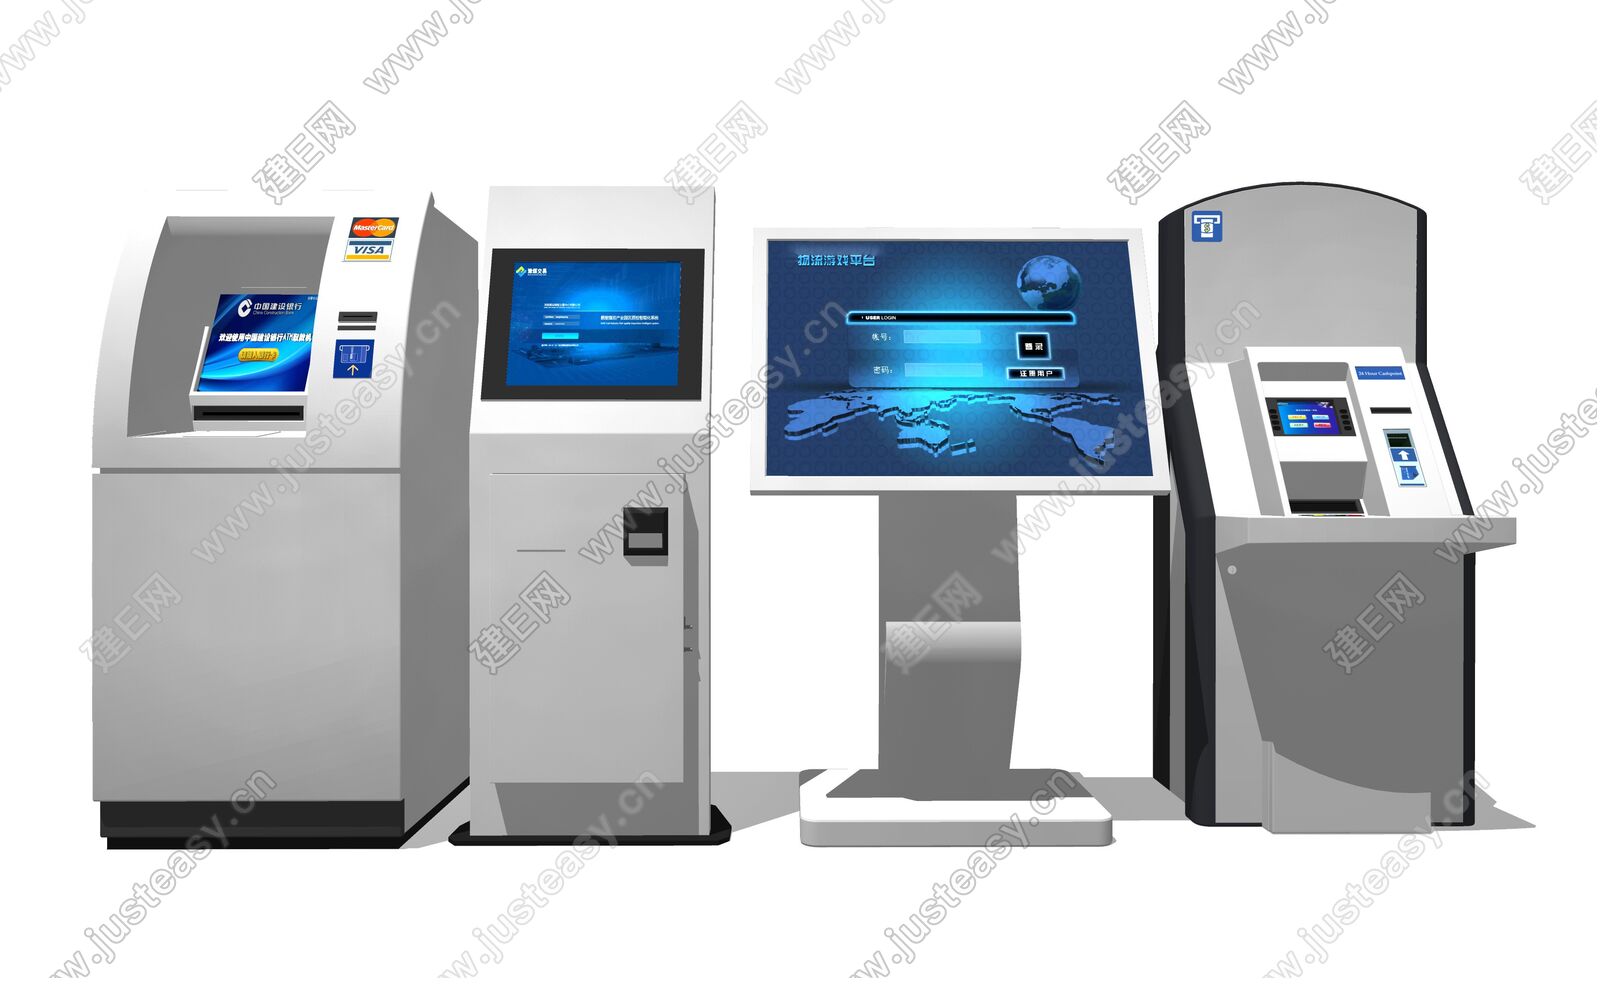 【现代ATM自助取款机3d模型】建E网_现代ATM自助取款机3d模型下载[ID:112413452]_打造3d现代ATM自助取款机模型免费下载平台